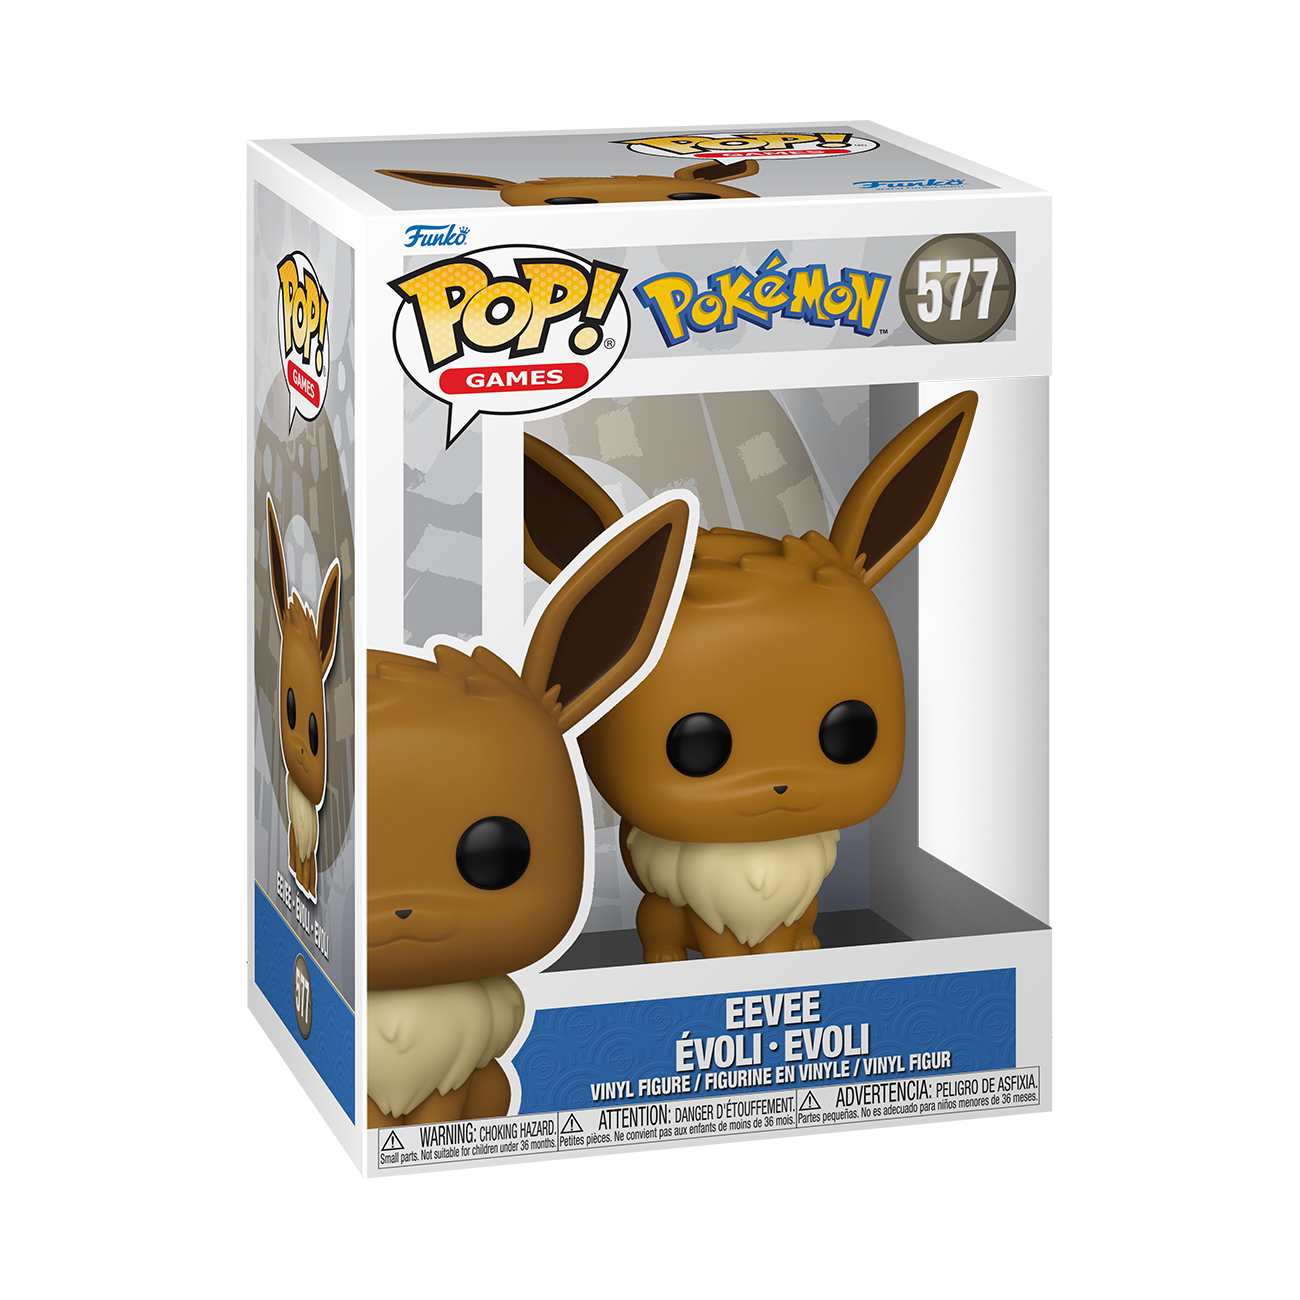 Figurine - Pop! Games - Pokémon - Salamèche - N° 455 - Funko